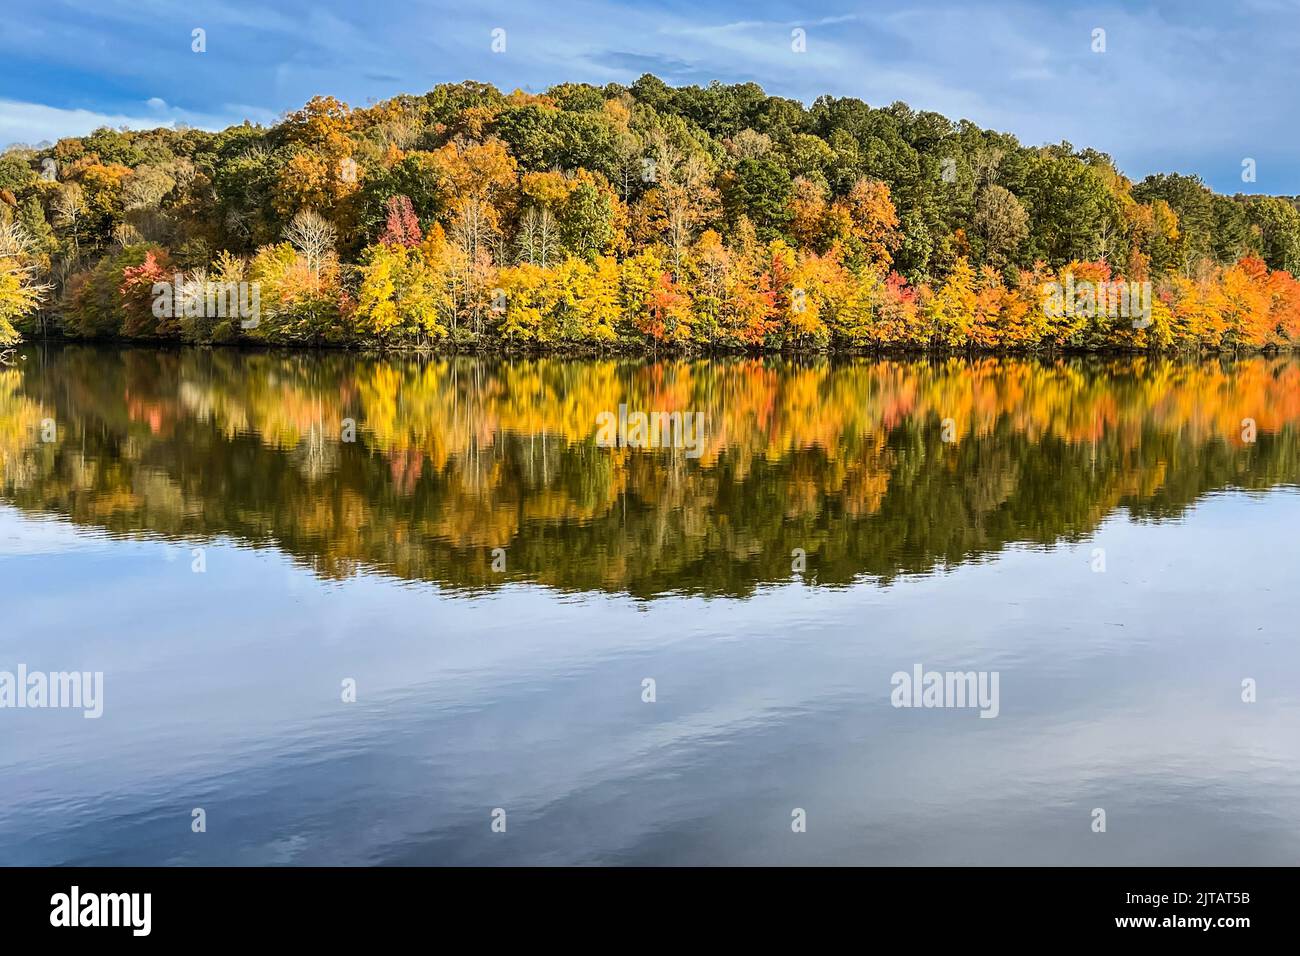 Les couleurs vives du feuillage d'automne se reflètent sur la surface du lac de Géorgie du Nord. Banque D'Images